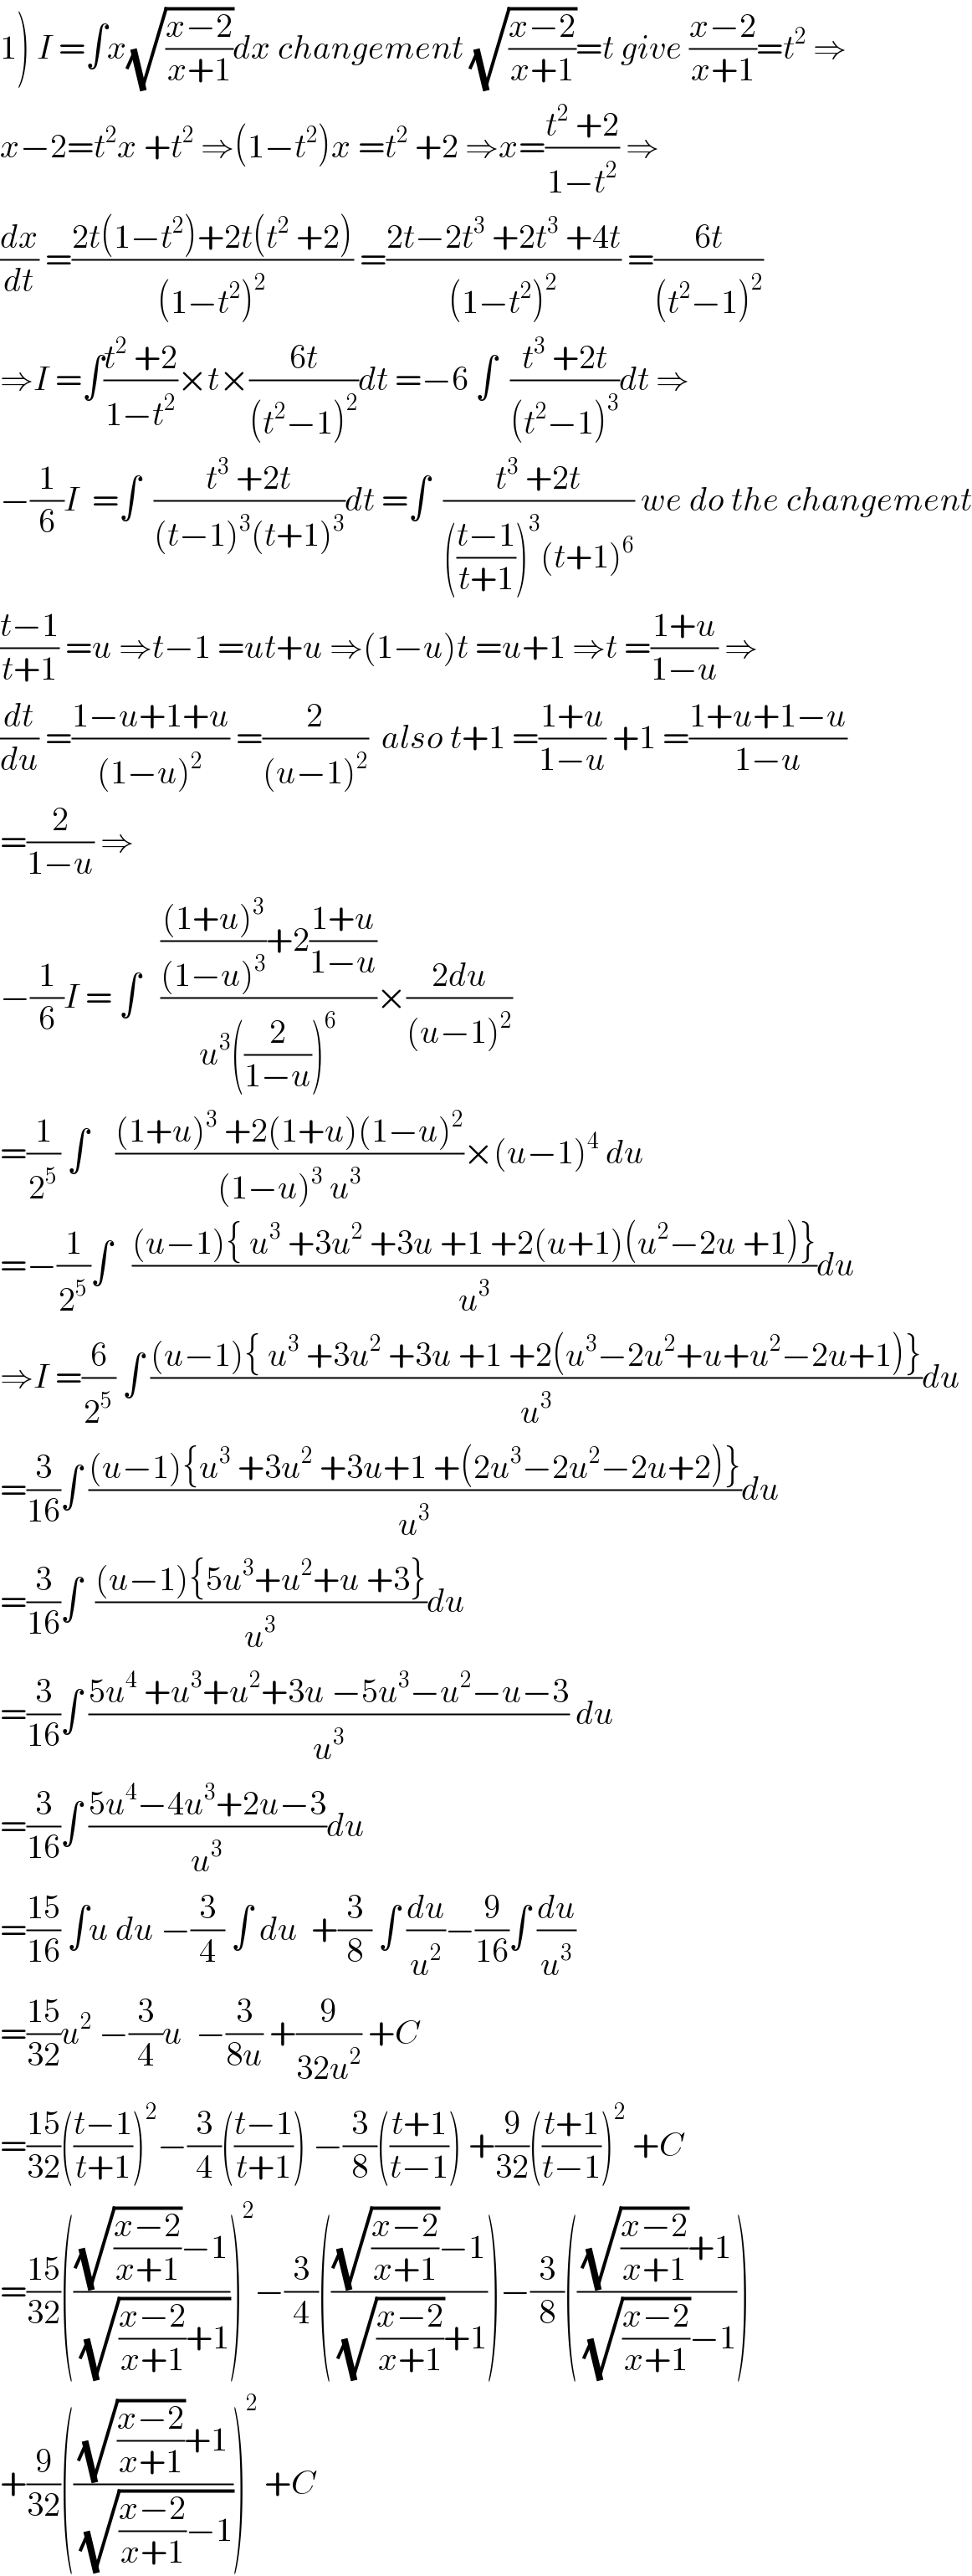 1) I =∫x(√((x−2)/(x+1)))dx changement (√((x−2)/(x+1)))=t give ((x−2)/(x+1))=t^2  ⇒  x−2=t^2 x +t^2  ⇒(1−t^2 )x =t^2  +2 ⇒x=((t^2  +2)/(1−t^2 )) ⇒  (dx/dt) =((2t(1−t^2 )+2t(t^2  +2))/((1−t^2 )^2 )) =((2t−2t^3  +2t^3  +4t)/((1−t^2 )^2 )) =((6t)/((t^2 −1)^2 ))  ⇒I =∫((t^2  +2)/(1−t^2 ))×t×((6t)/((t^2 −1)^2 ))dt =−6 ∫  ((t^3  +2t)/((t^2 −1)^3 ))dt ⇒  −(1/6)I  =∫  ((t^3  +2t)/((t−1)^3 (t+1)^3 ))dt =∫  ((t^3  +2t)/((((t−1)/(t+1)))^3 (t+1)^6 )) we do the changement  ((t−1)/(t+1)) =u ⇒t−1 =ut+u ⇒(1−u)t =u+1 ⇒t =((1+u)/(1−u)) ⇒  (dt/du) =((1−u+1+u)/((1−u)^2 )) =(2/((u−1)^2 ))  also t+1 =((1+u)/(1−u)) +1 =((1+u+1−u)/(1−u))  =(2/(1−u)) ⇒  −(1/6)I = ∫   (((((1+u)^3 )/((1−u)^3 ))+2((1+u)/(1−u)))/(u^3 ((2/(1−u)))^6 ))×((2du)/((u−1)^2 ))  =(1/2^5 ) ∫    (((1+u)^3  +2(1+u)(1−u)^2 )/((1−u)^3  u^3 ))×(u−1)^4  du  =−(1/2^5 )∫   (((u−1){ u^3  +3u^2  +3u +1 +2(u+1)(u^2 −2u +1)})/u^3 )du  ⇒I =(6/2^5 ) ∫ (((u−1){ u^3  +3u^2  +3u +1 +2(u^3 −2u^2 +u+u^2 −2u+1)})/u^3 )du  =(3/(16))∫ (((u−1){u^3  +3u^2  +3u+1 +(2u^3 −2u^2 −2u+2)})/u^3 )du  =(3/(16))∫  (((u−1){5u^3 +u^2 +u +3})/u^3 )du  =(3/(16))∫ ((5u^4  +u^3 +u^2 +3u −5u^3 −u^2 −u−3)/u^3 ) du  =(3/(16))∫ ((5u^4 −4u^3 +2u−3)/u^3 )du  =((15)/(16)) ∫u du −(3/4) ∫ du  +(3/8) ∫ (du/u^2 )−(9/(16))∫ (du/u^3 )  =((15)/(32))u^2  −(3/4)u  −(3/(8u)) +(9/(32u^2 )) +C  =((15)/(32))(((t−1)/(t+1)))^2 −(3/4)(((t−1)/(t+1))) −(3/8)(((t+1)/(t−1))) +(9/(32))(((t+1)/(t−1)))^2  +C  =((15)/(32))((((√((x−2)/(x+1)))−1)/(√(((x−2)/(x+1))+1))))^2 −(3/4)((((√((x−2)/(x+1)))−1)/((√((x−2)/(x+1)))+1)))−(3/8)((((√((x−2)/(x+1)))+1)/((√((x−2)/(x+1)))−1)))  +(9/(32))((((√((x−2)/(x+1)))+1)/(√(((x−2)/(x+1))−1))))^2  +C  